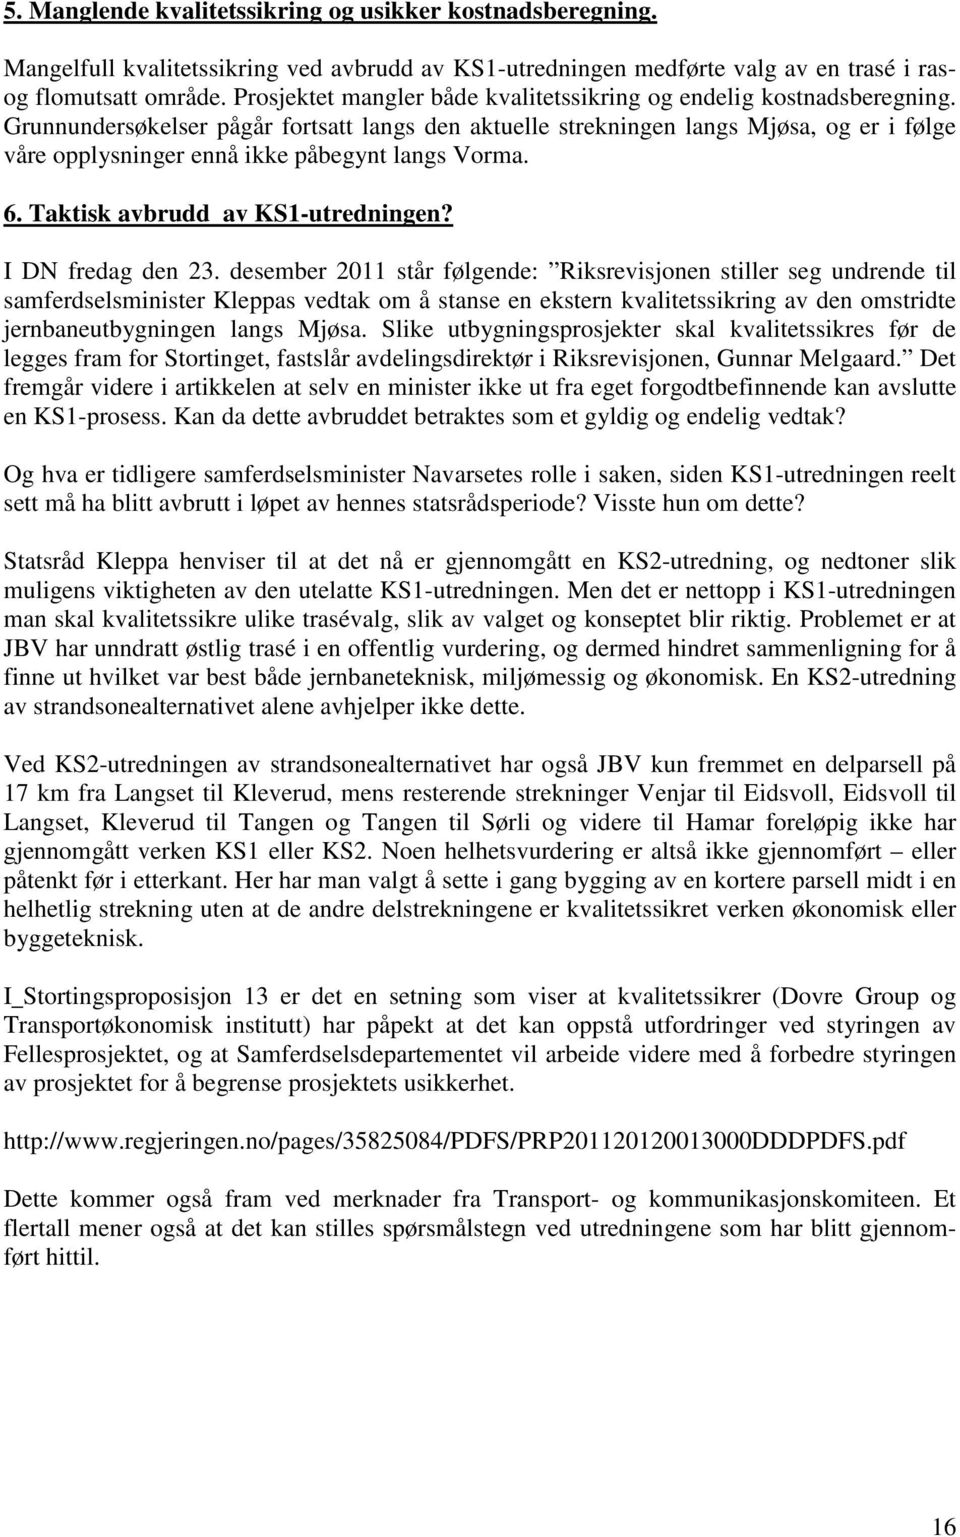 Grunnundersøkelser pågår fortsatt langs den aktuelle strekningen langs Mjøsa, og er i følge våre opplysninger ennå ikke påbegynt langs Vorma. 6. Taktisk avbrudd av KS1-utredningen? I DN fredag den 23.